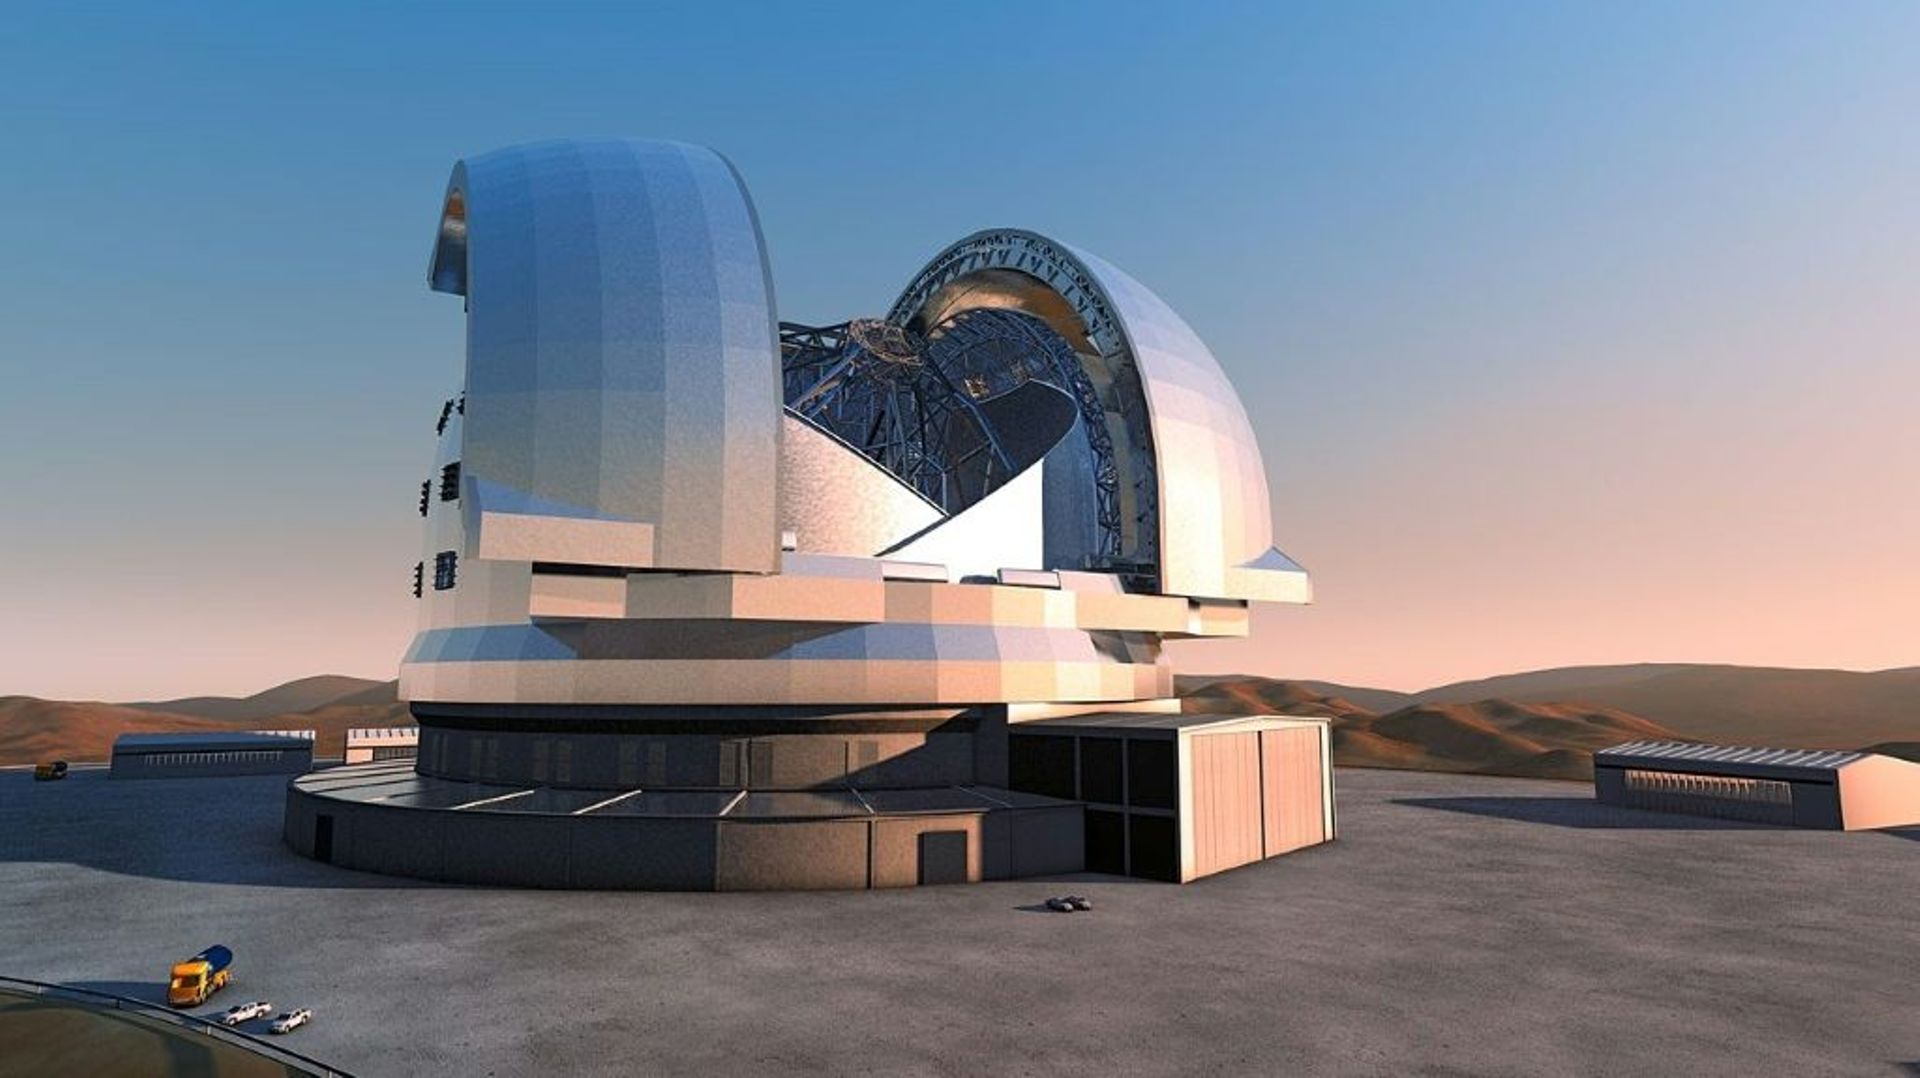 Image de synthèse représentant le Télescope extrêmement grand (ELT), conçu par l'Observatoire européen austral (ESO) et dont la présidente chilienne Michelle Bachelet a lancé la construction dans le désert d'Atacama